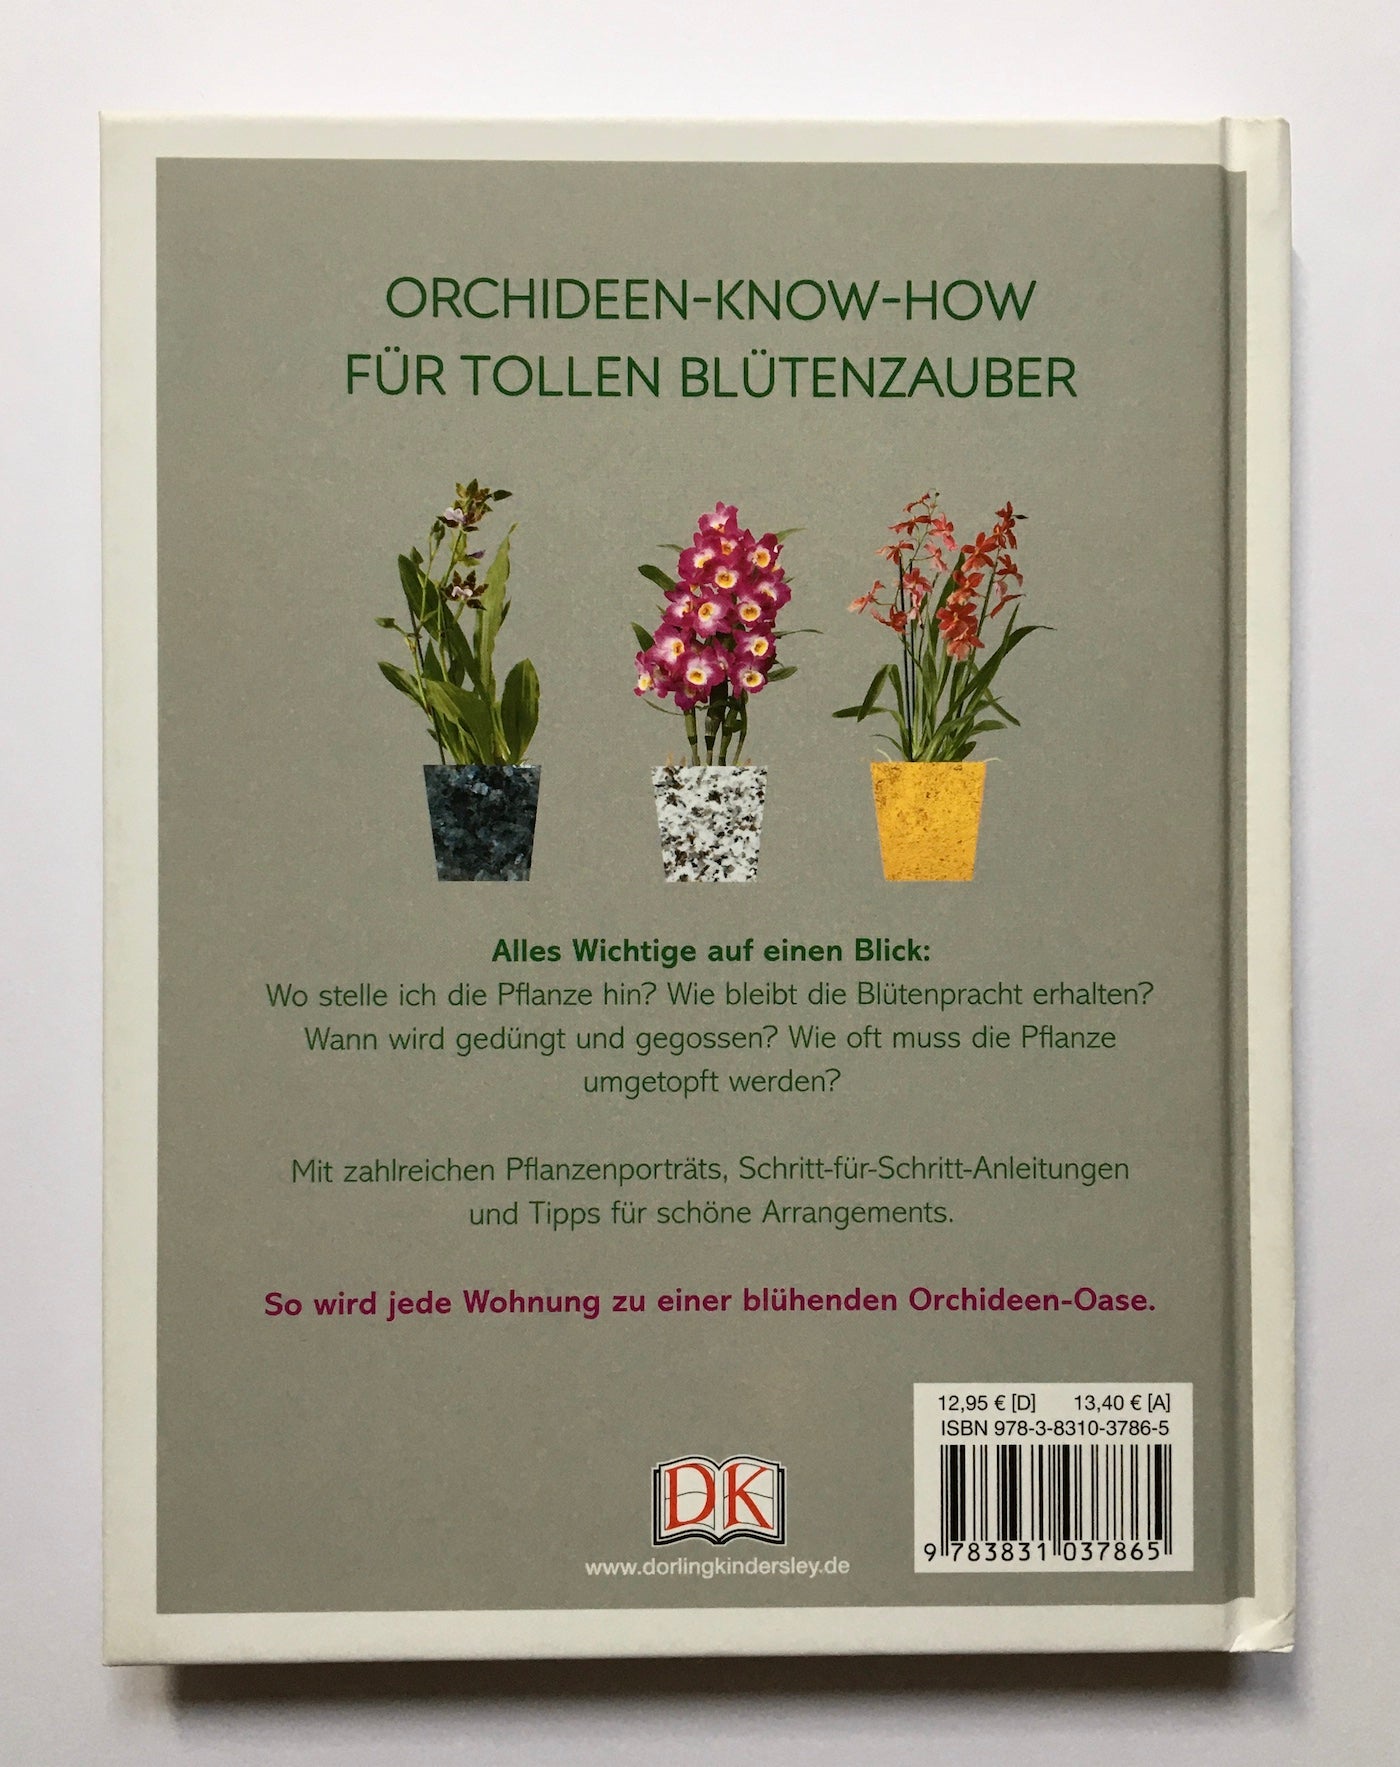 Orchideen-Glück: Mit der richtigen Pflege zur üppigen Blütenpracht